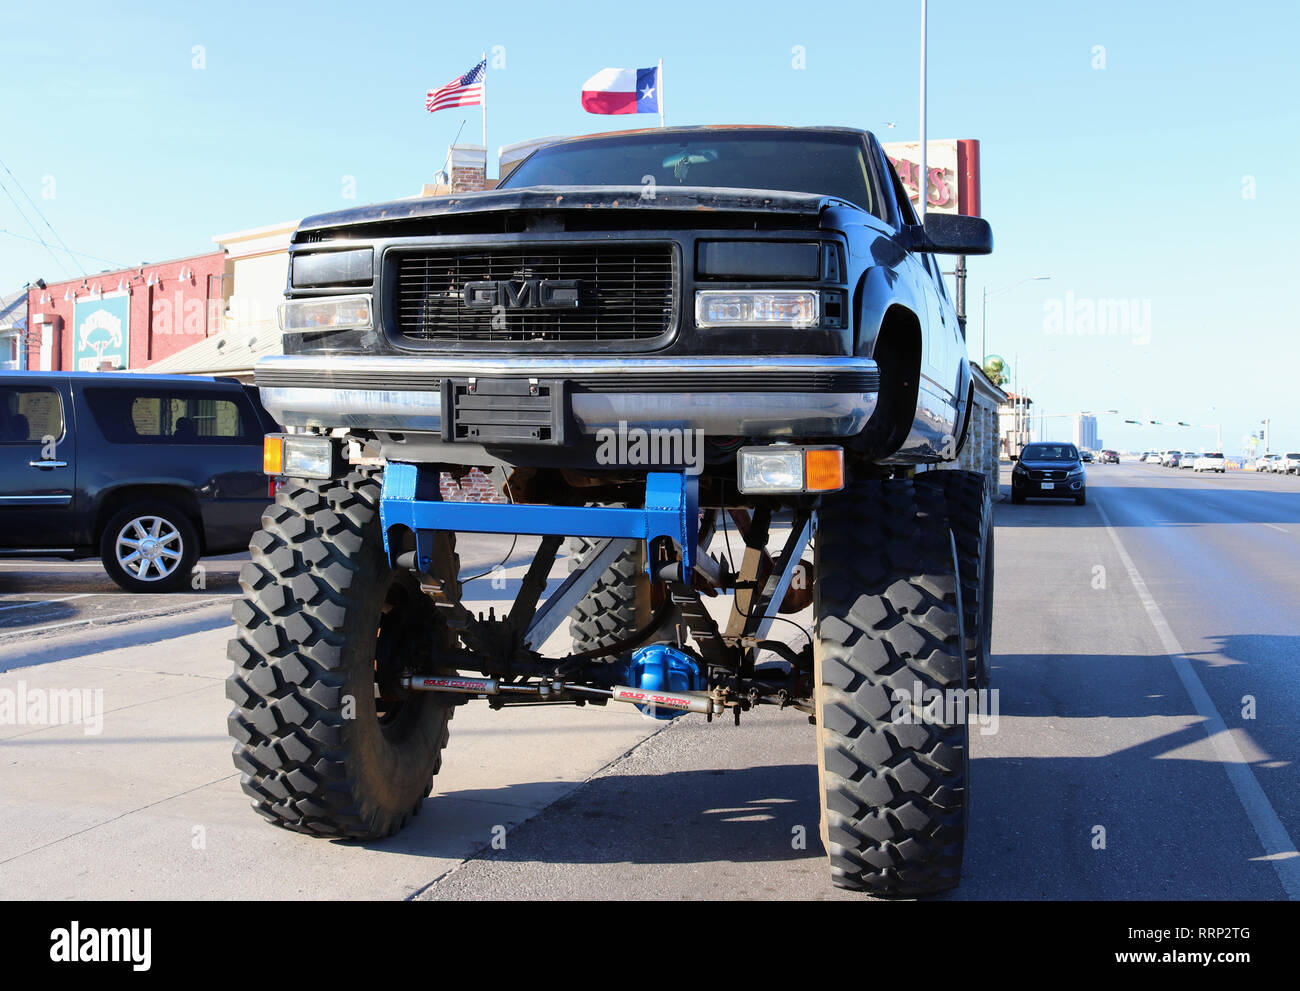 GALVESTON, Texas, Stati Uniti d'America - 9 giugno 2018: tipico texano street paesaggio. Un gigante di monster truck è parcheggiato sul boulevard. Sullo sfondo le bandiere statunitensi. Foto Stock